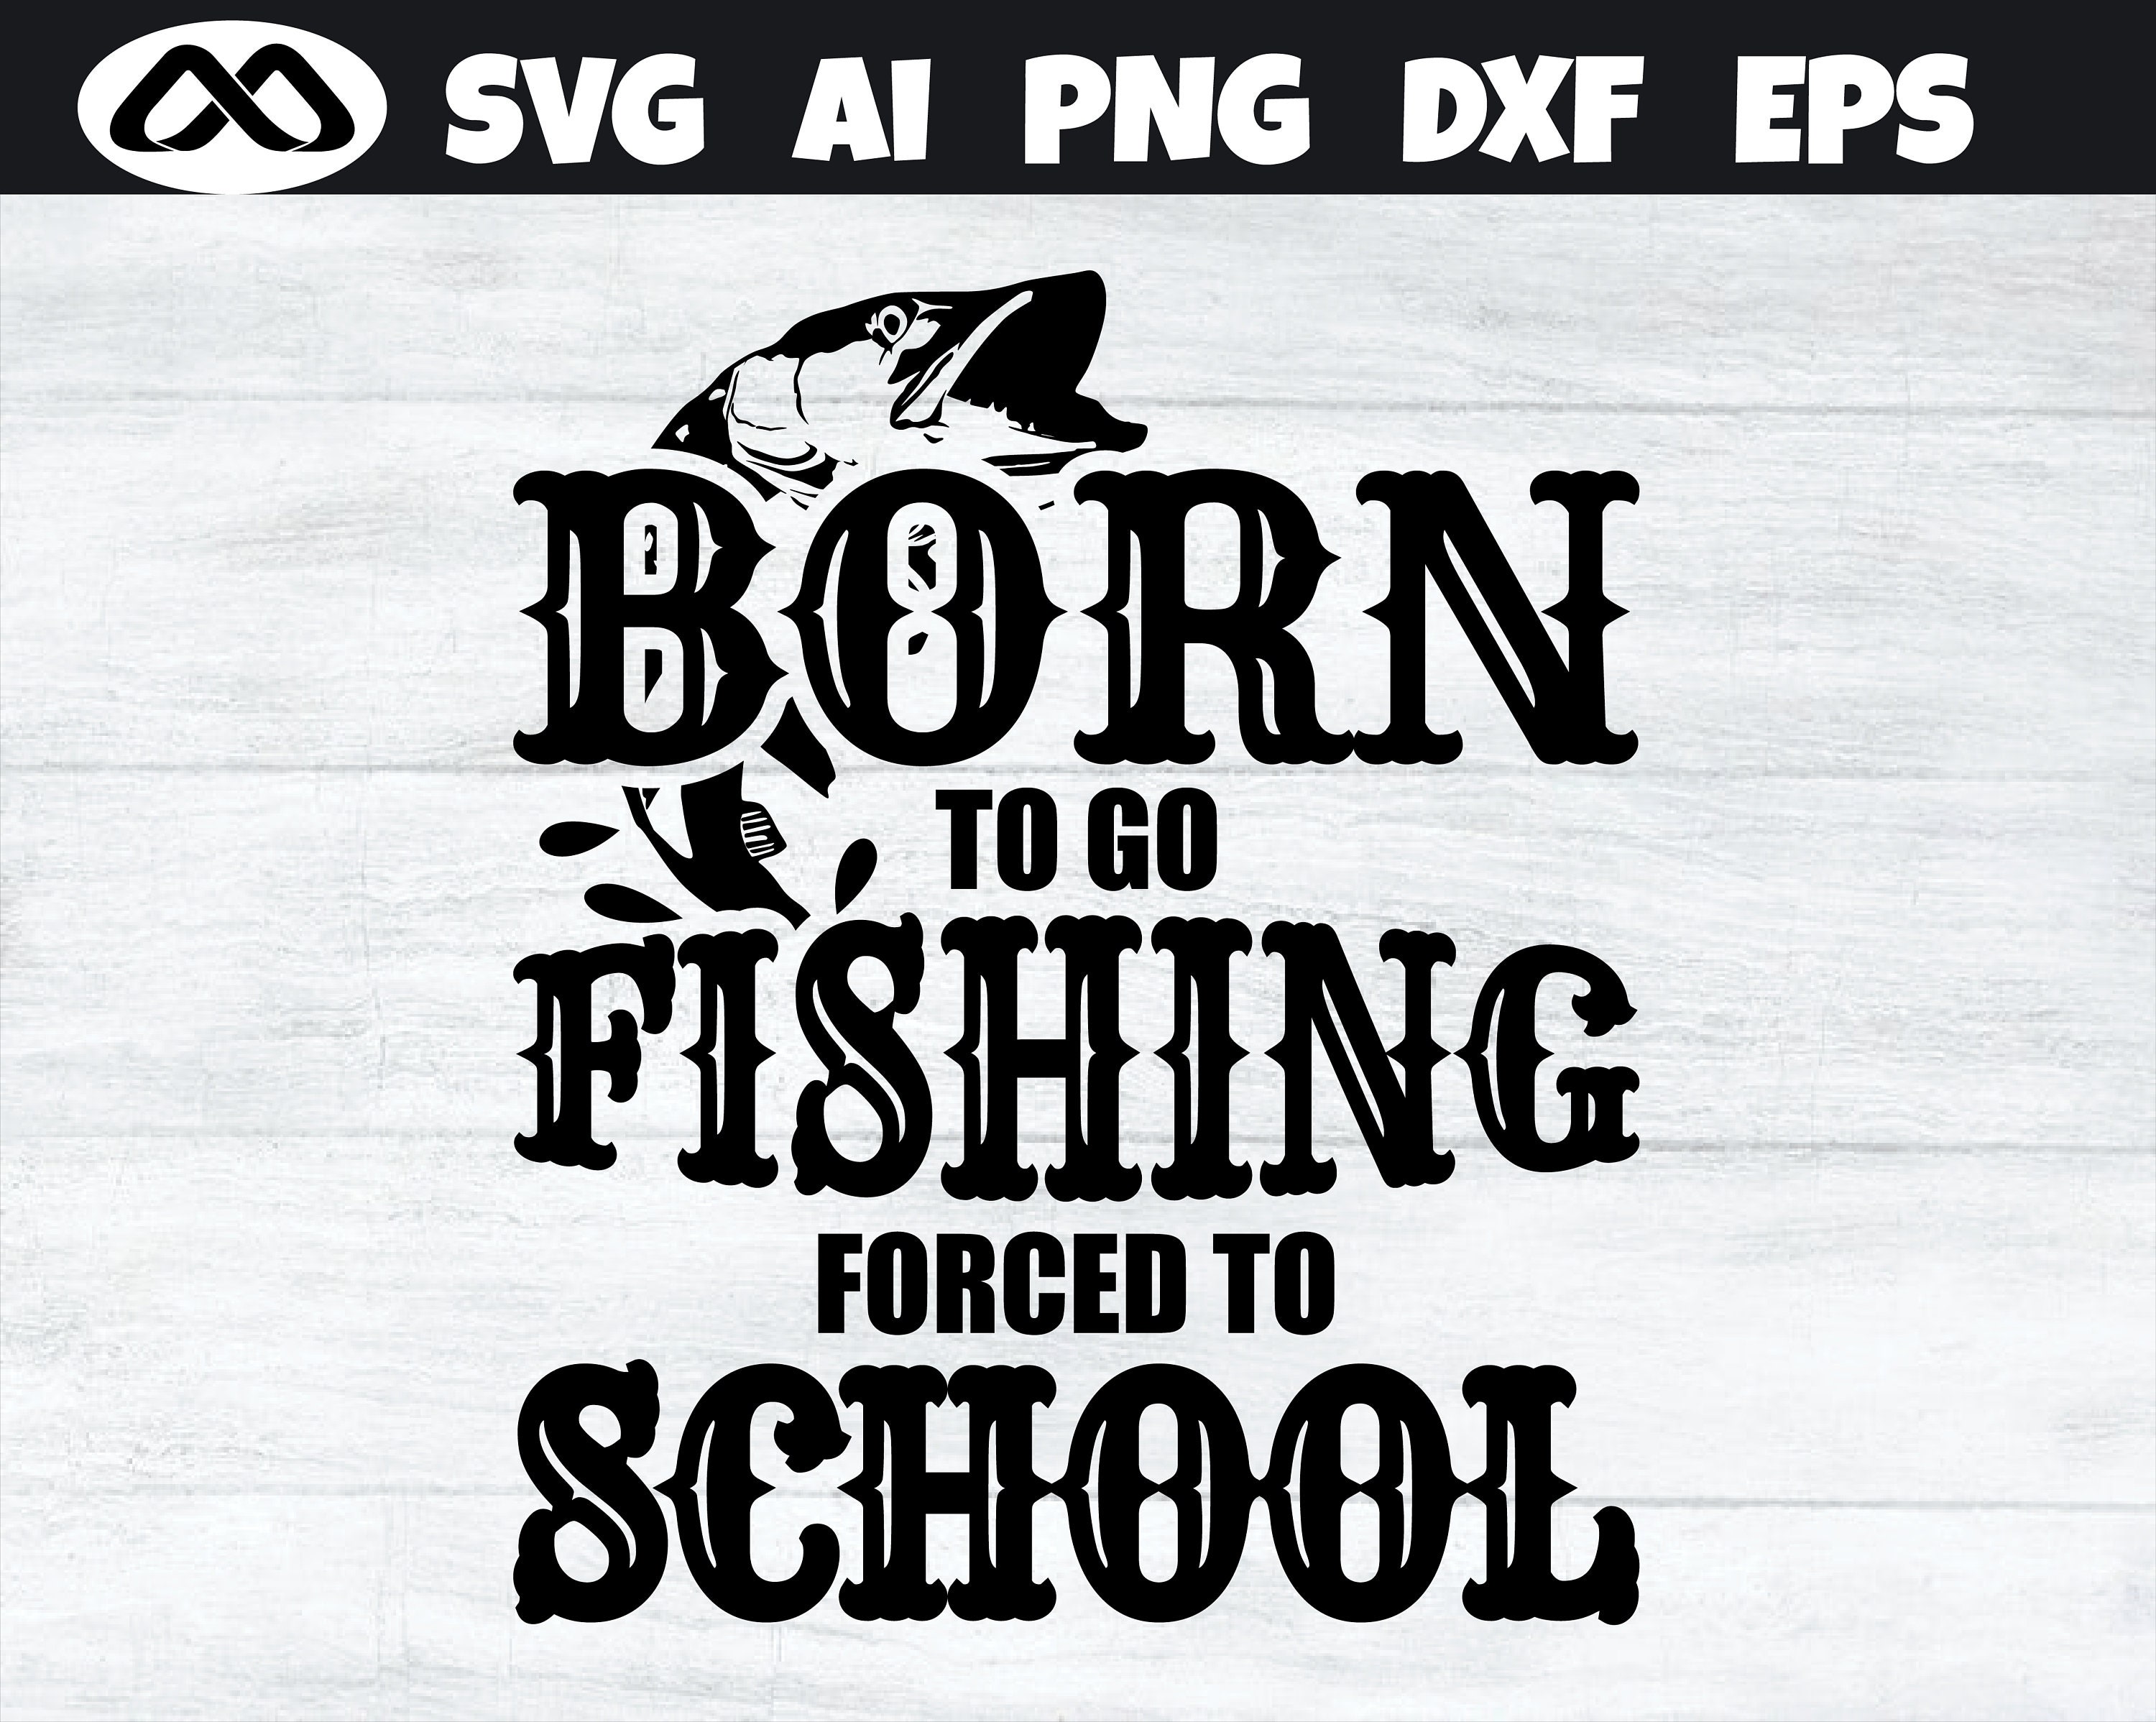 Born to Go Fishing Forced to School Fishing SVG, Fishing SVG, Fish